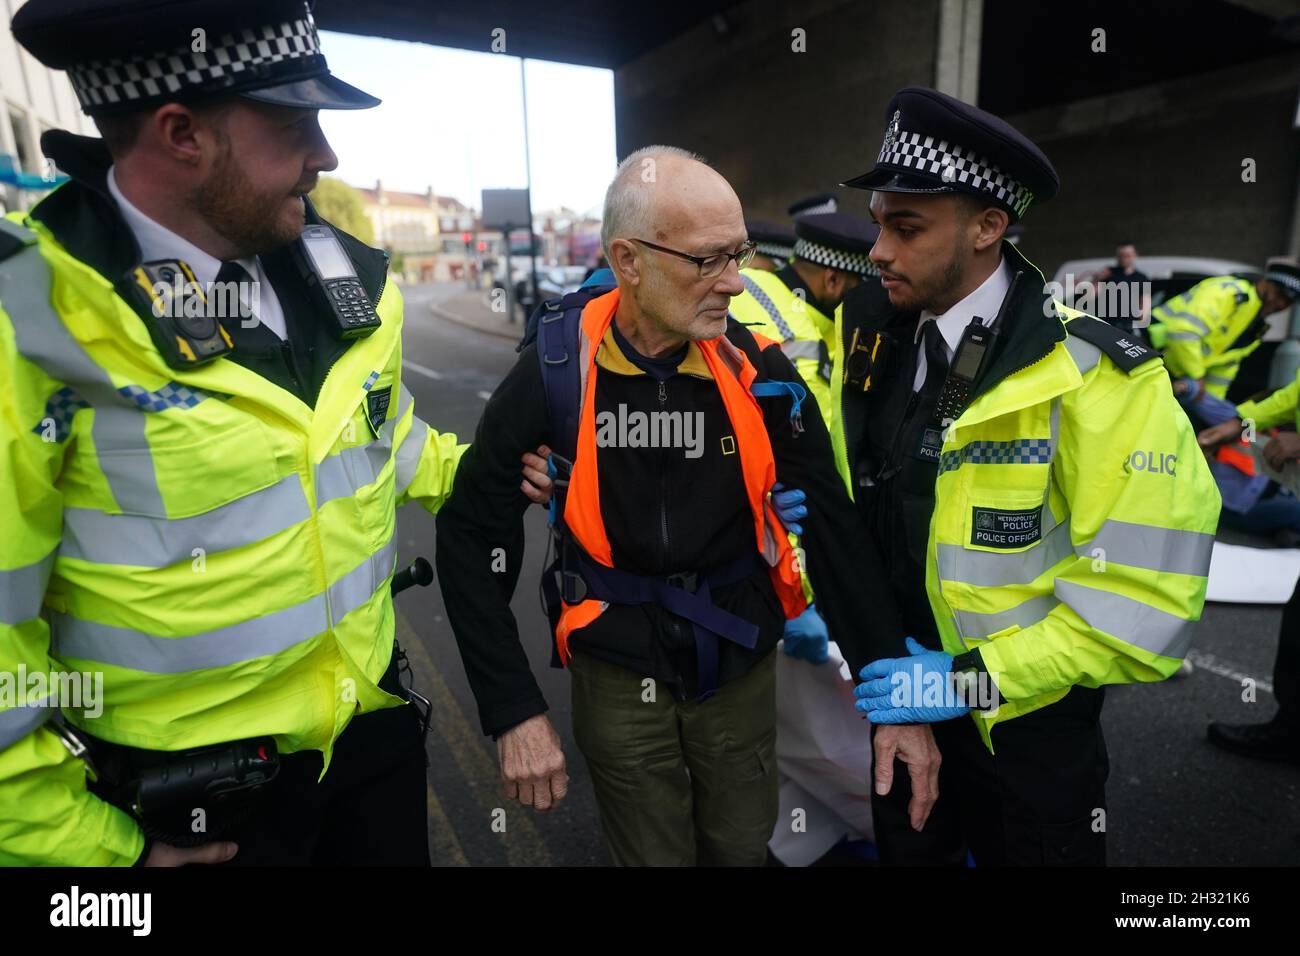 Die Polizei beseitigt die Beleidigung britischer Demonstranten, nachdem sie eine Straße in der Nähe von Canary Wharf im Osten Londons blockiert hatten. Die Klimagruppe, die Großbritannien beleidigt hatte, hatte versprochen, ihre Blockaden-Proteste wieder aufzunehmen, obwohl die Gefahr besteht, dass seine Mitglieder inhaftiert oder mit Geldstrafen belegt werden. Bilddatum: Montag, 25. Oktober 2021. Stockfoto